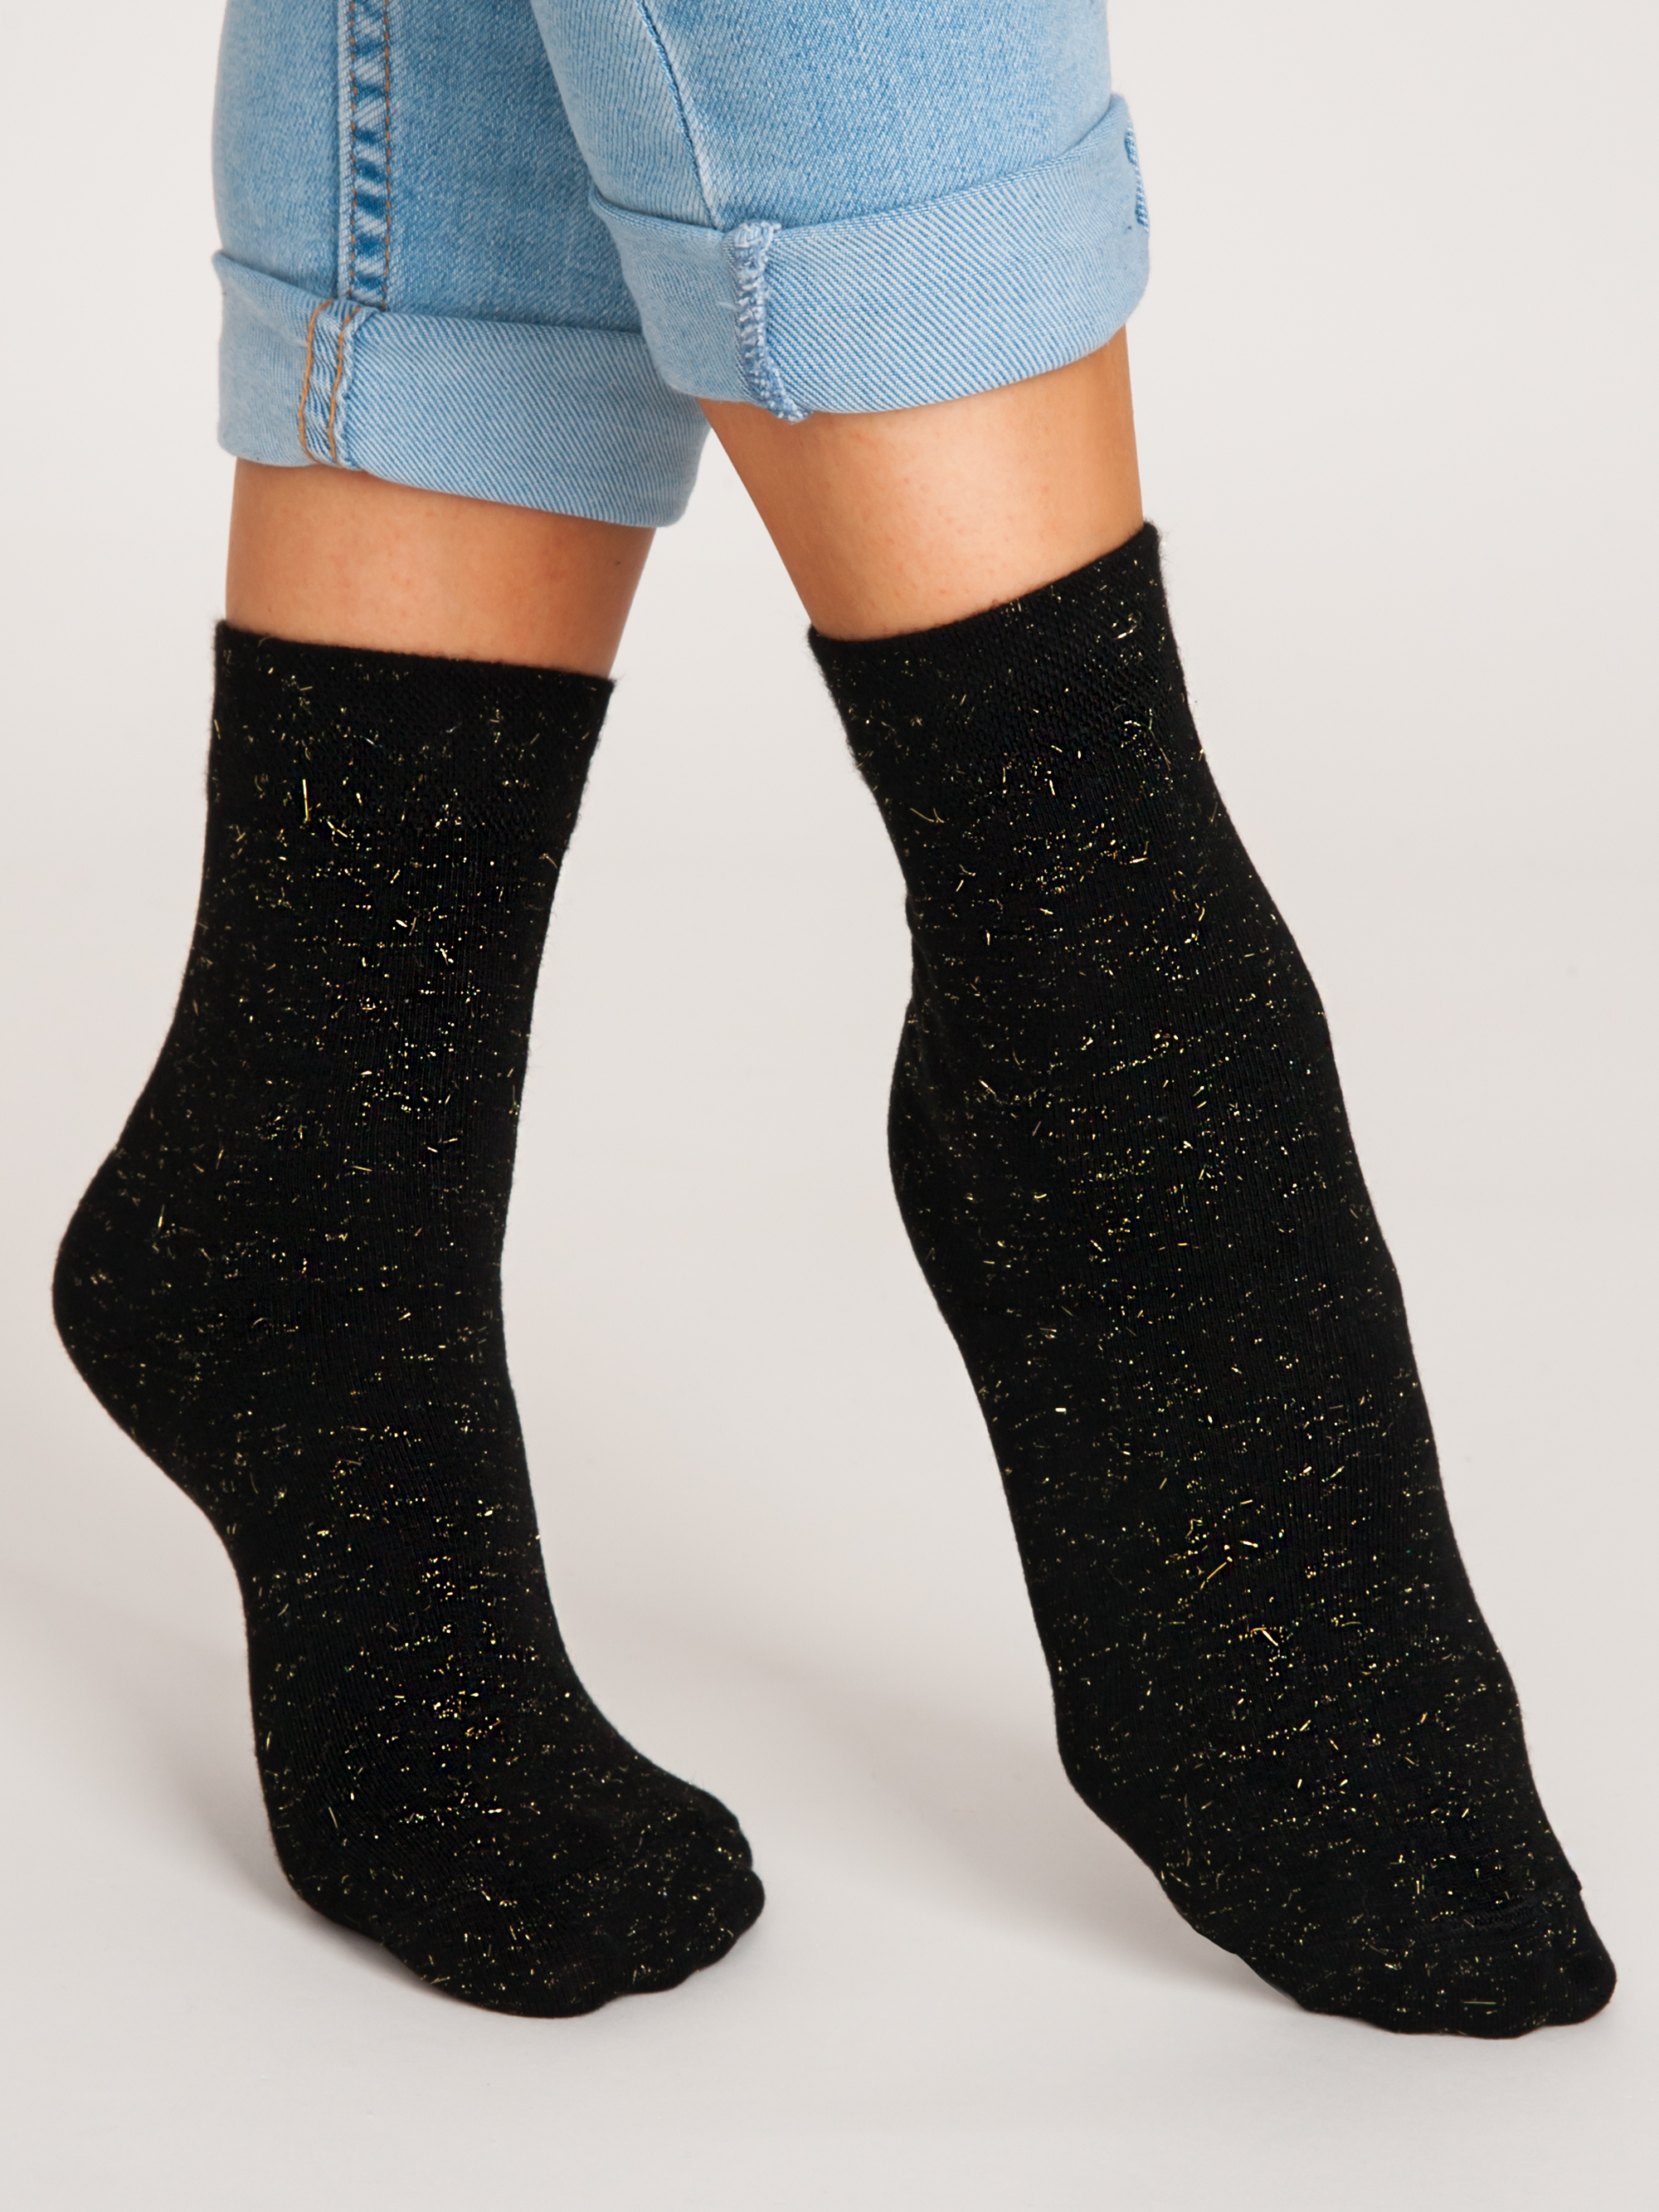 NOVITI Woman's Socks SB012-W-01